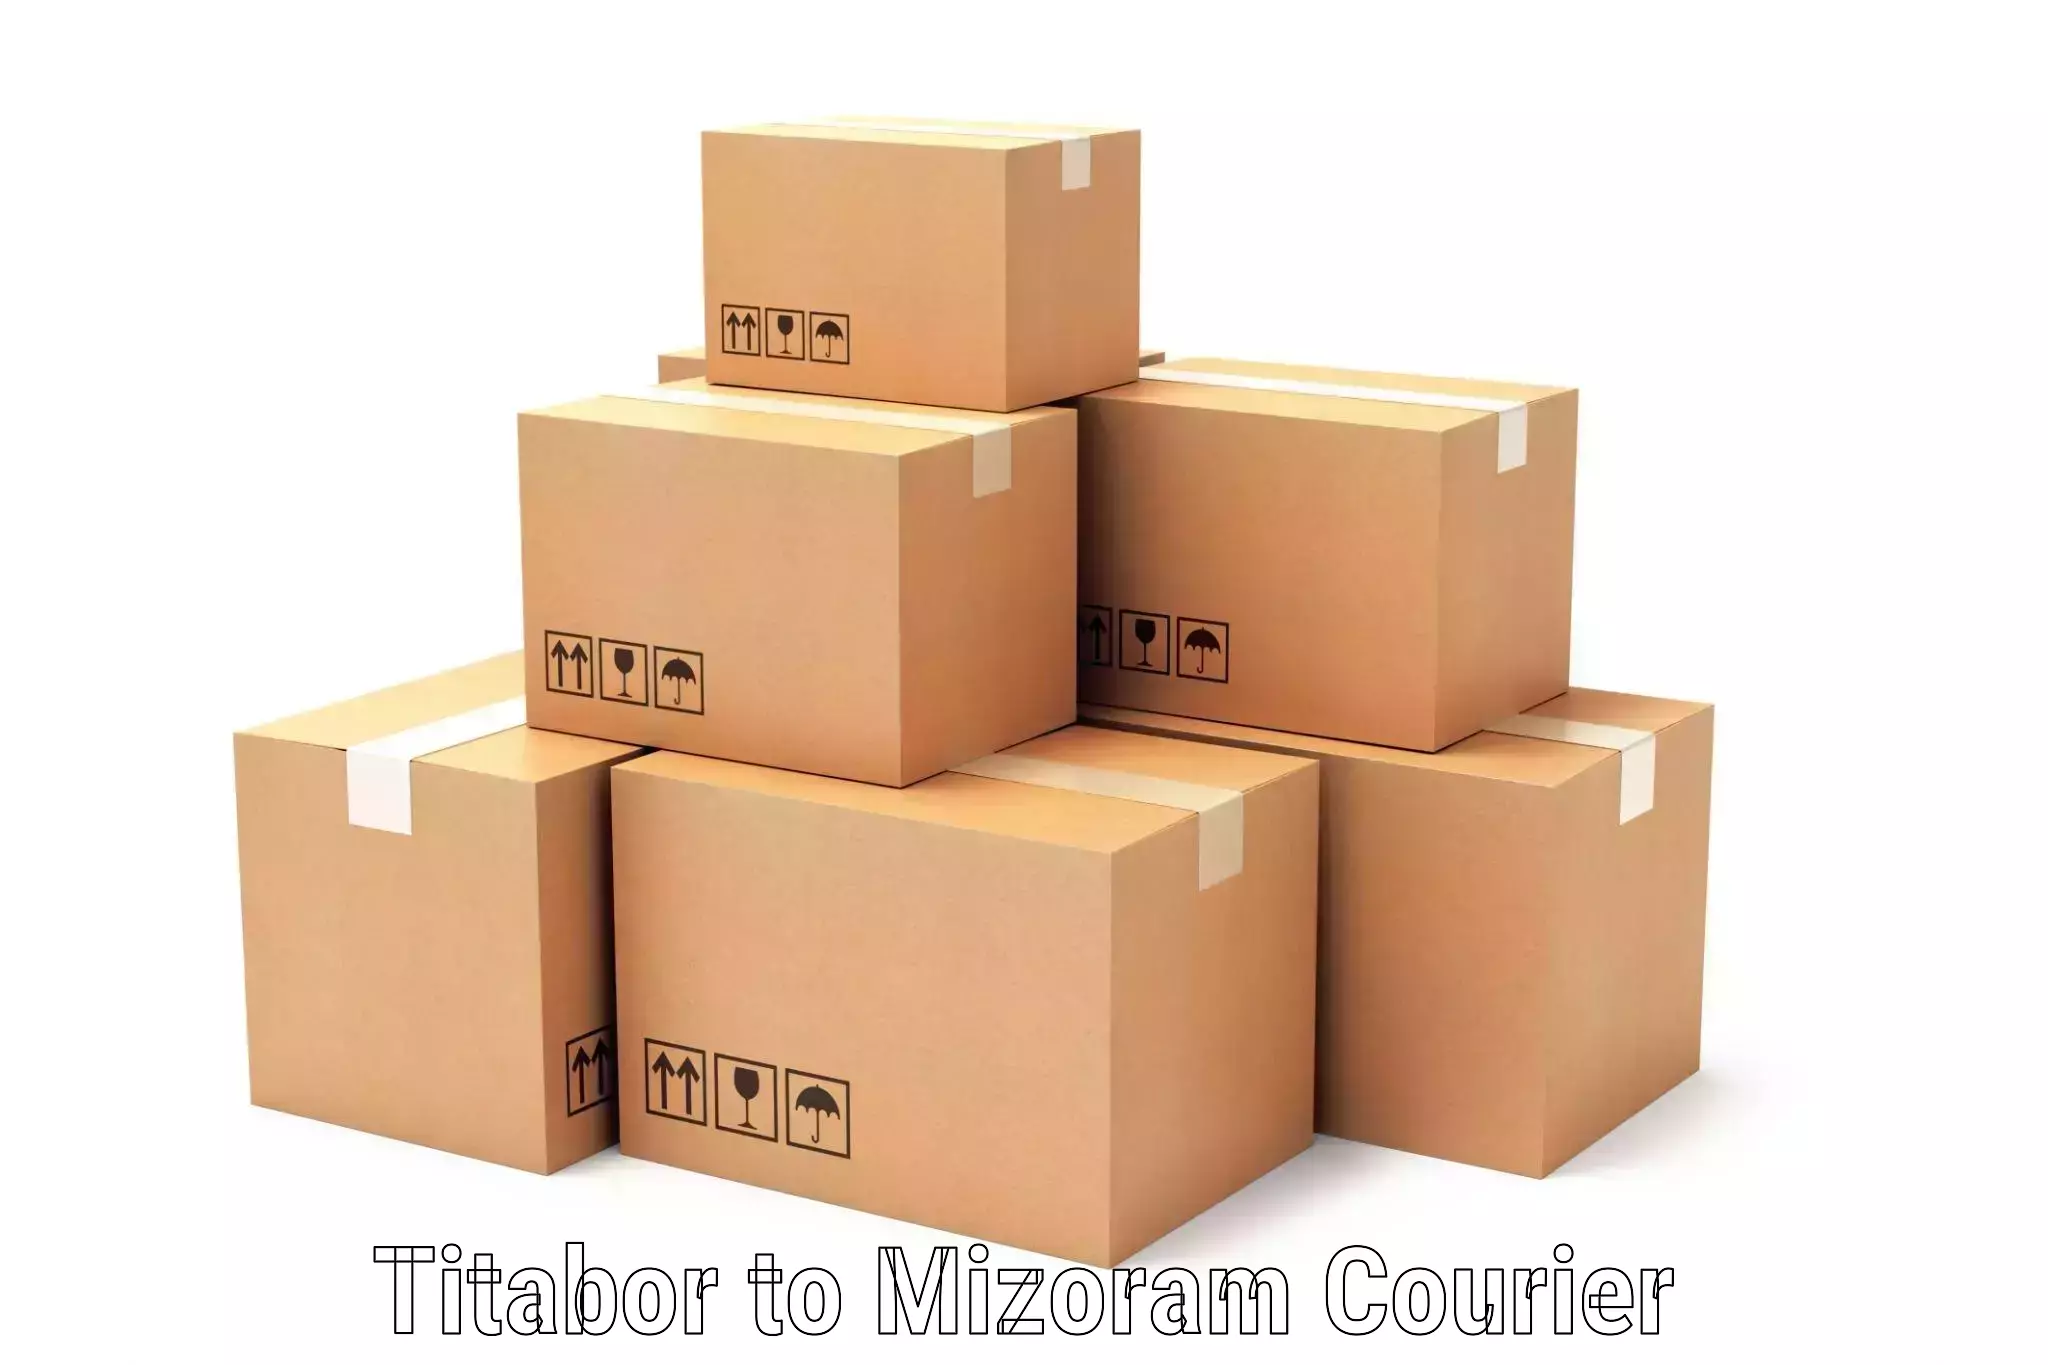 24/7 shipping services Titabor to Saitual